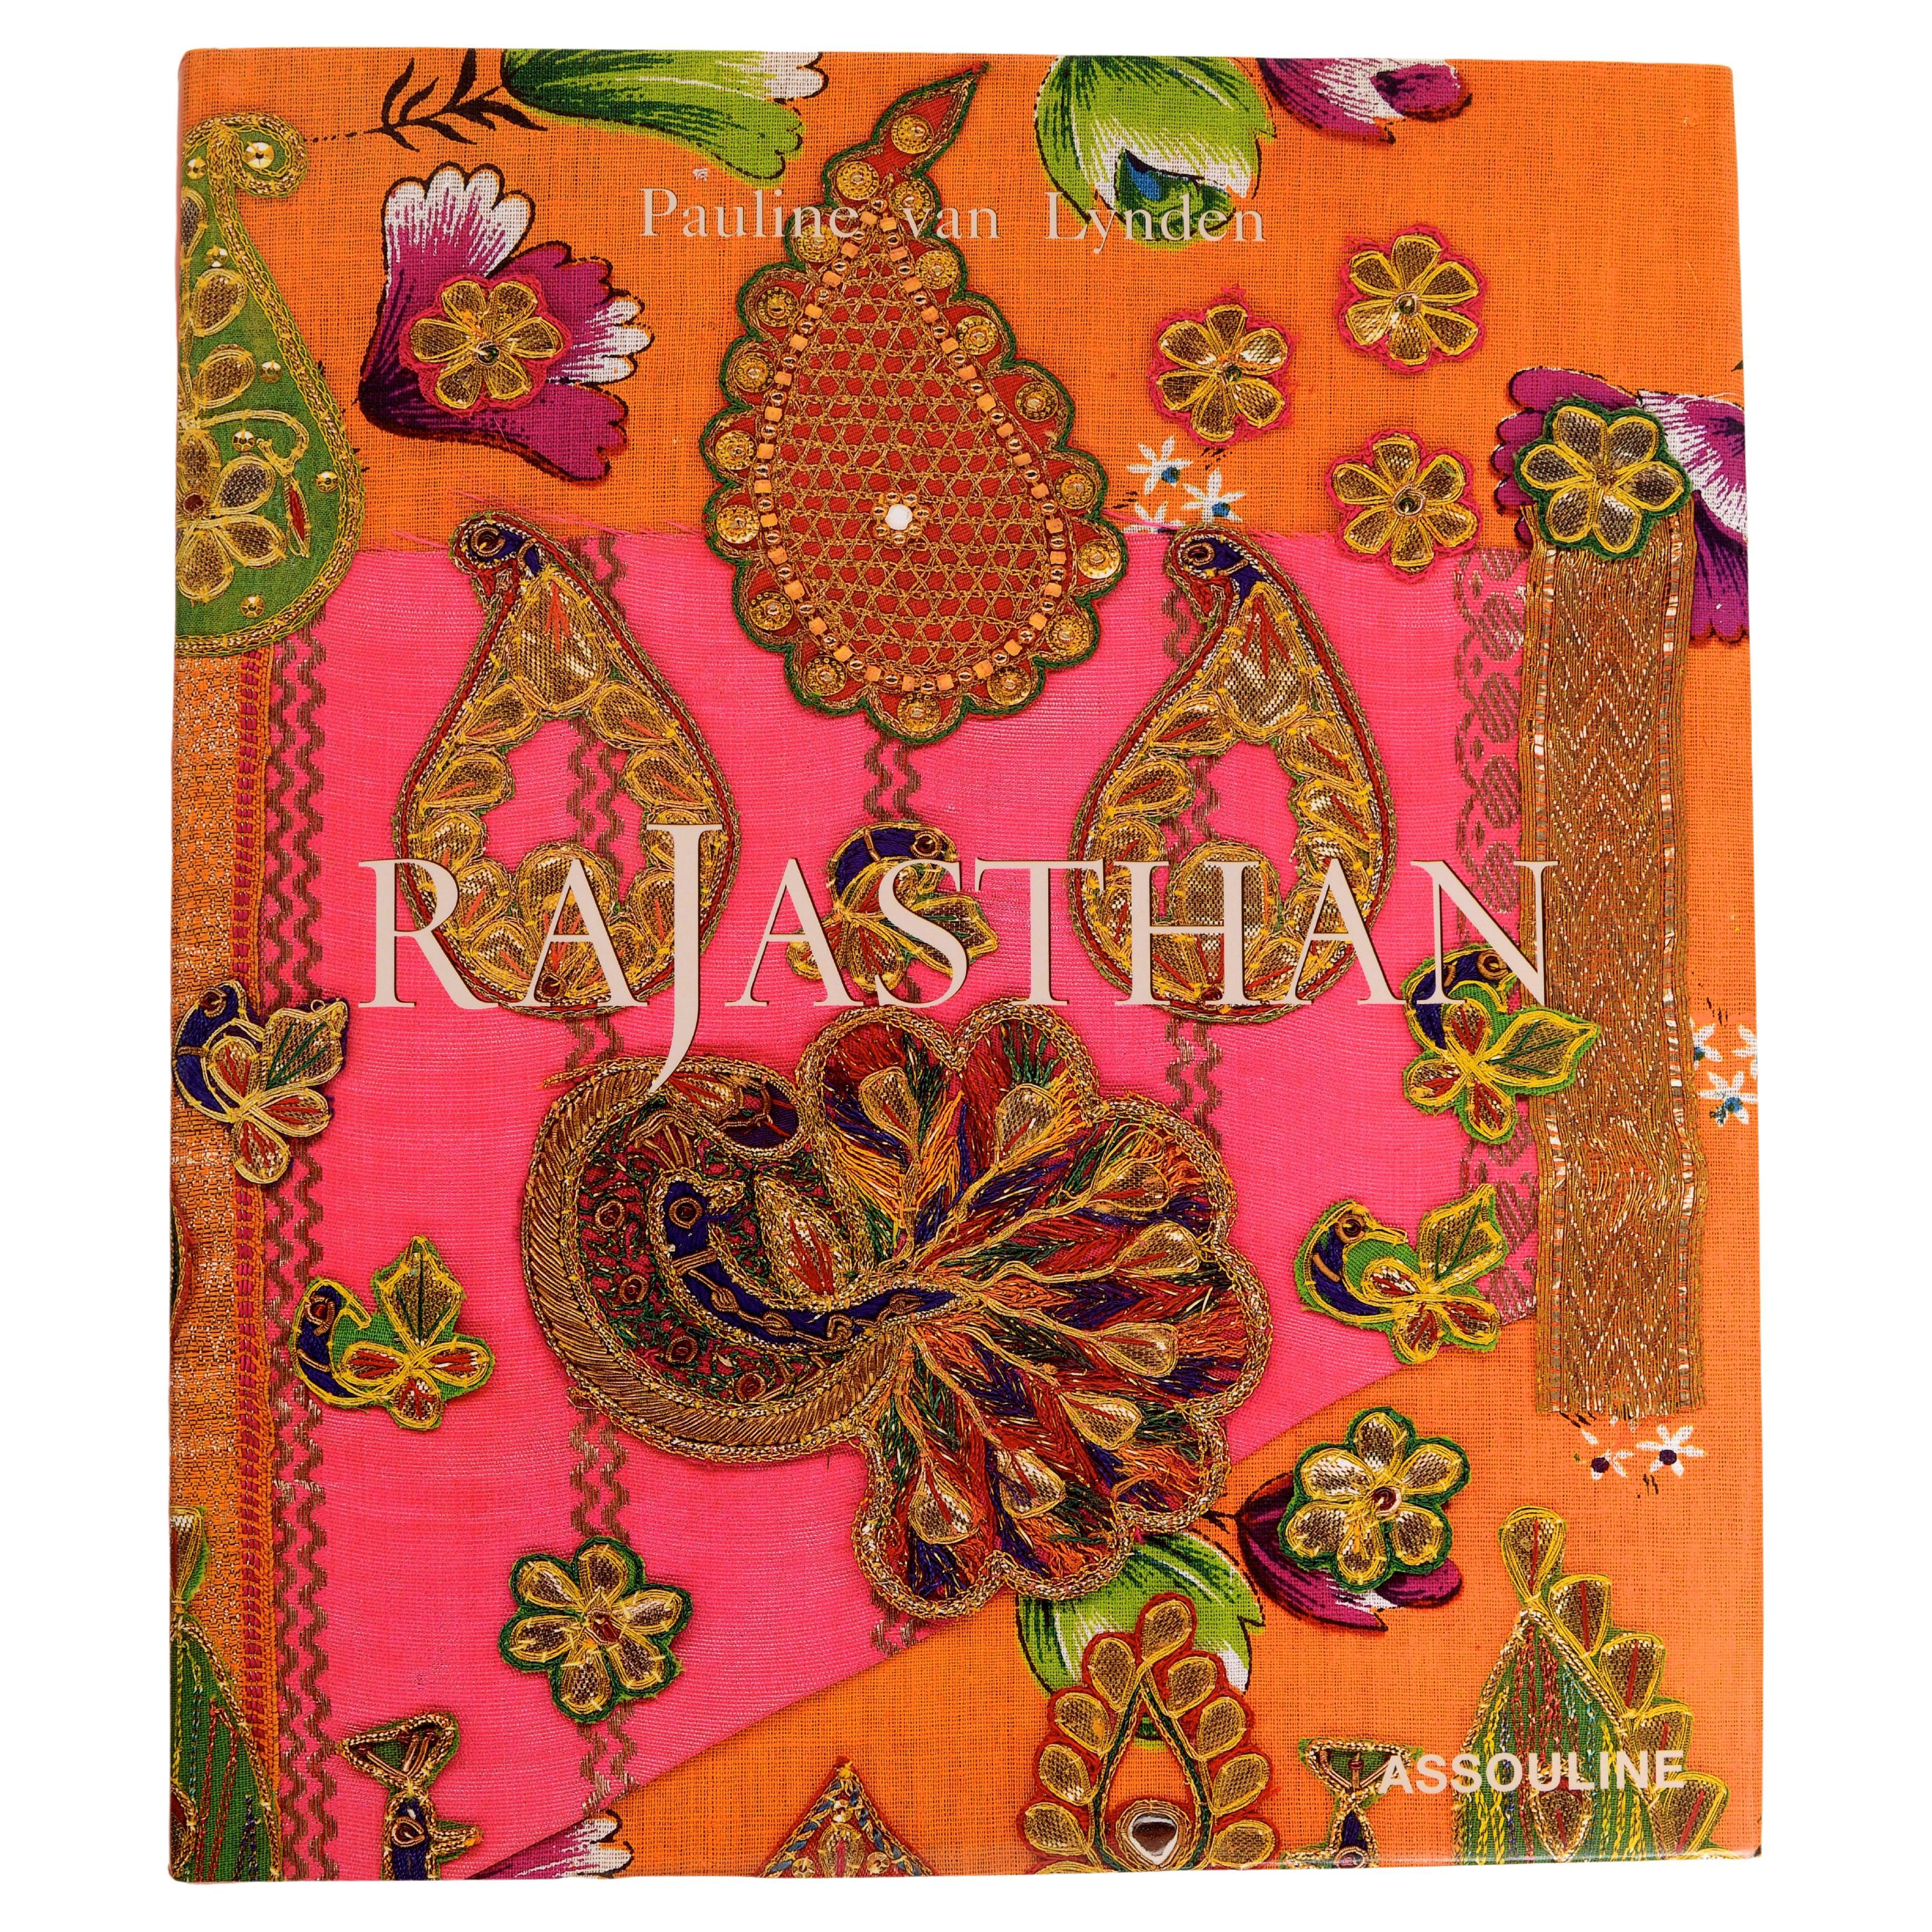 Rajasthan by Pauline Van Lynden, 1st Ed